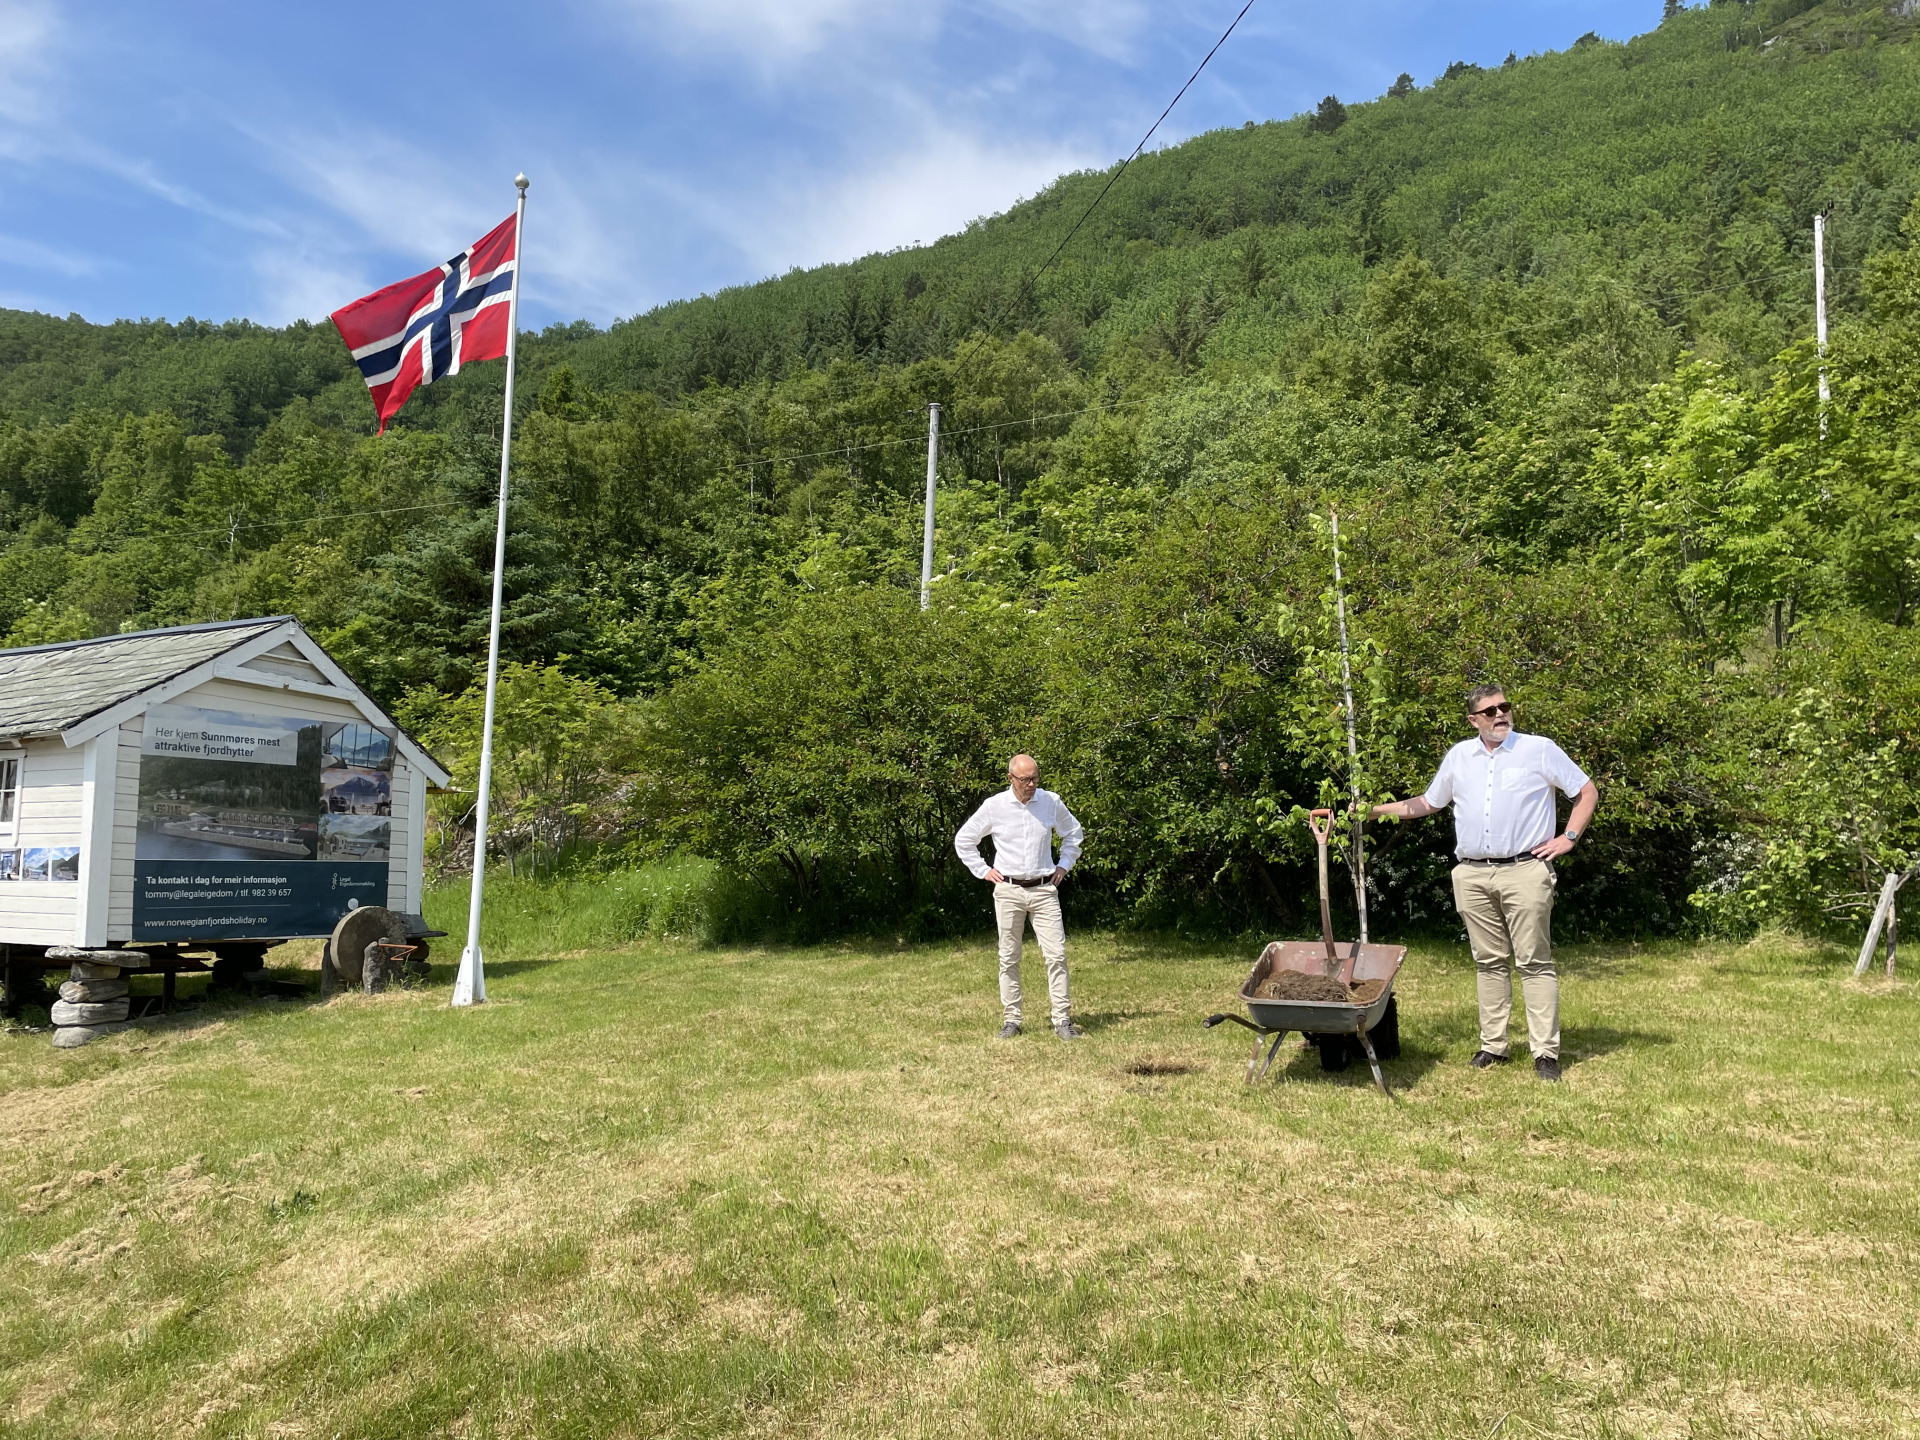 Hareid-ordførar Bernt Brandal plantar alm som symbol for salstart av Sunnmøres mest attraktive fjordhytter.